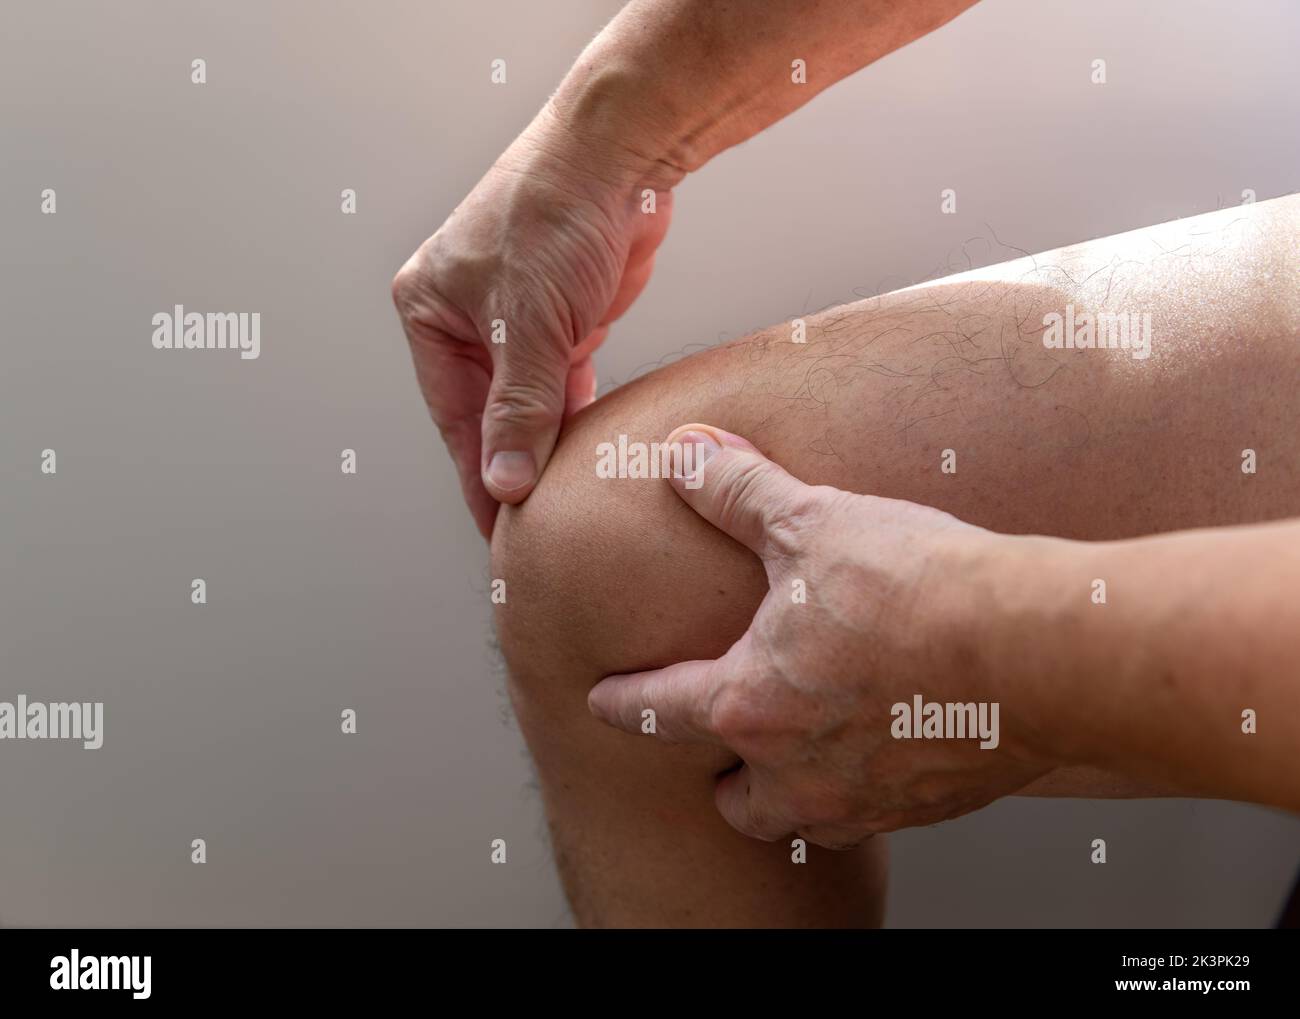 Une personne souffrant de douleurs au genou le massant pour le soulagement. Blessures. Arthrite. Banque D'Images